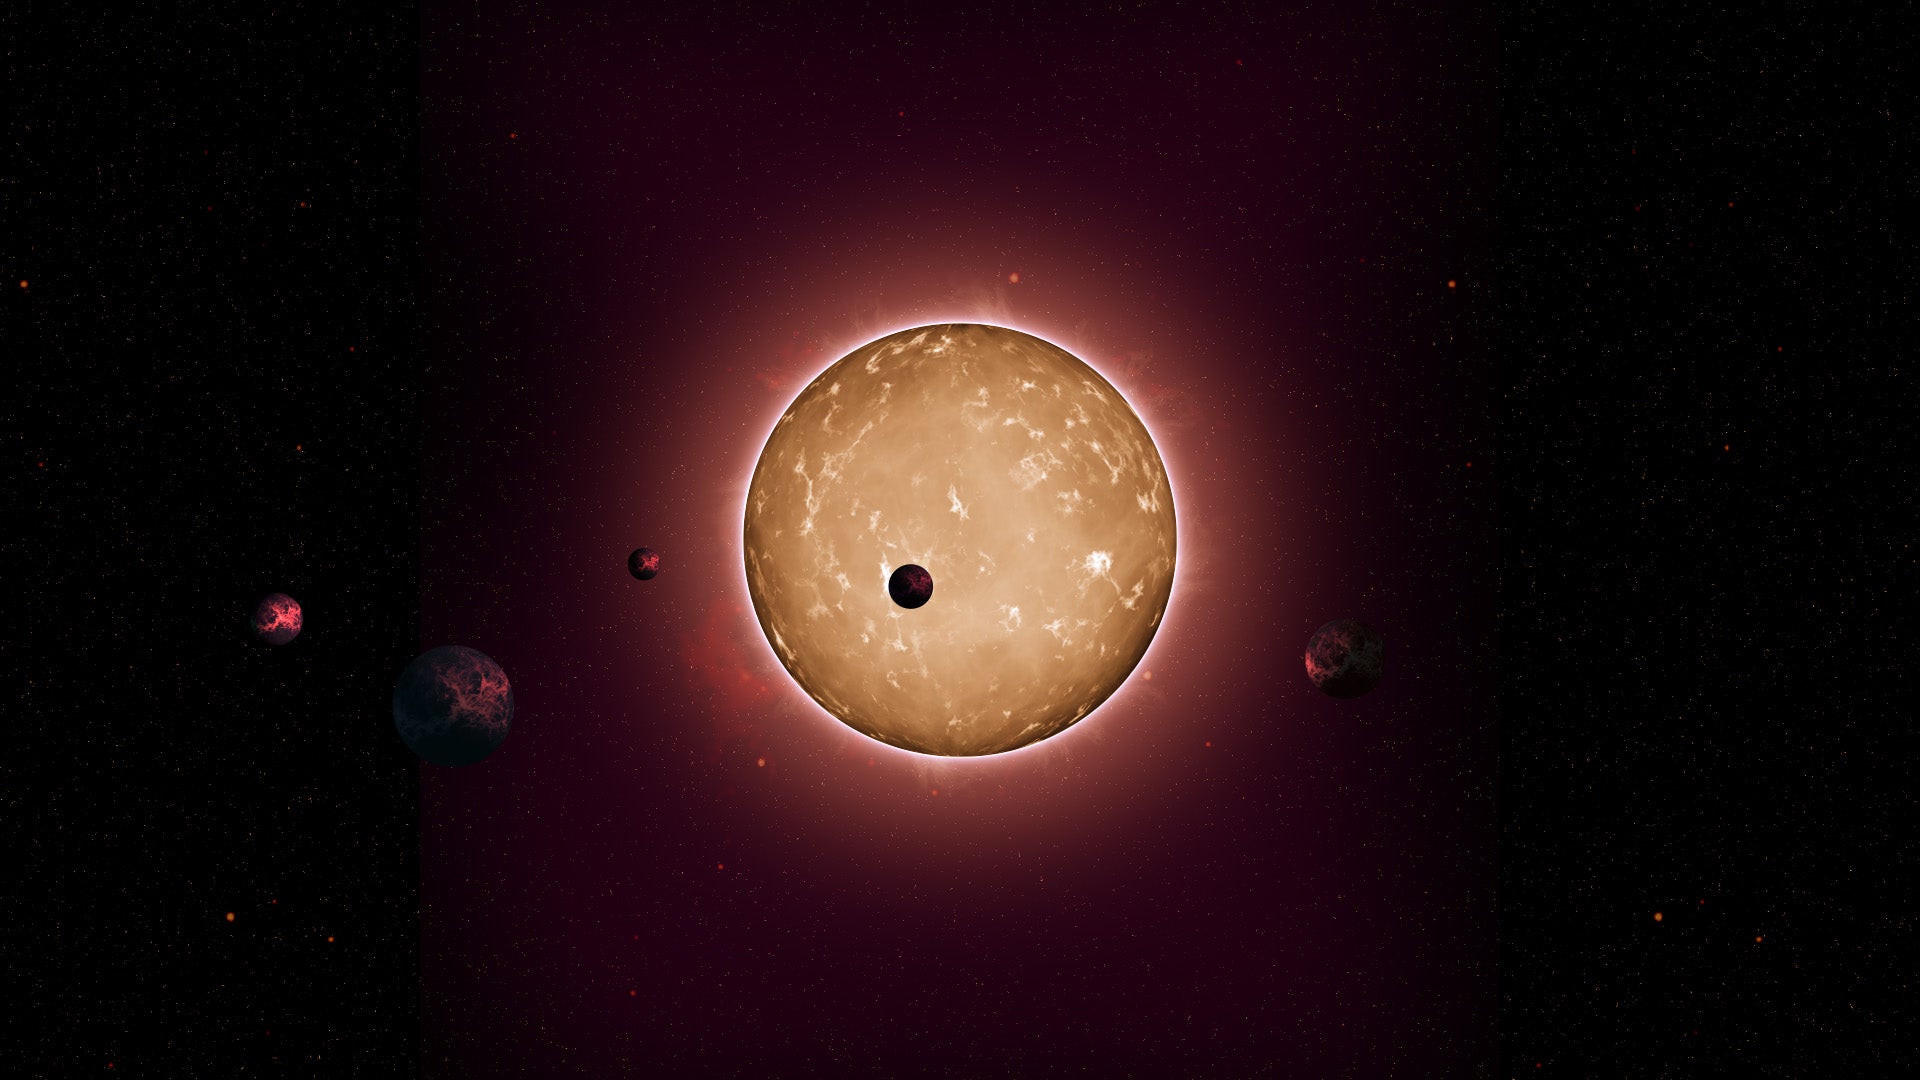 Representación del sistema planetario Kepler-444